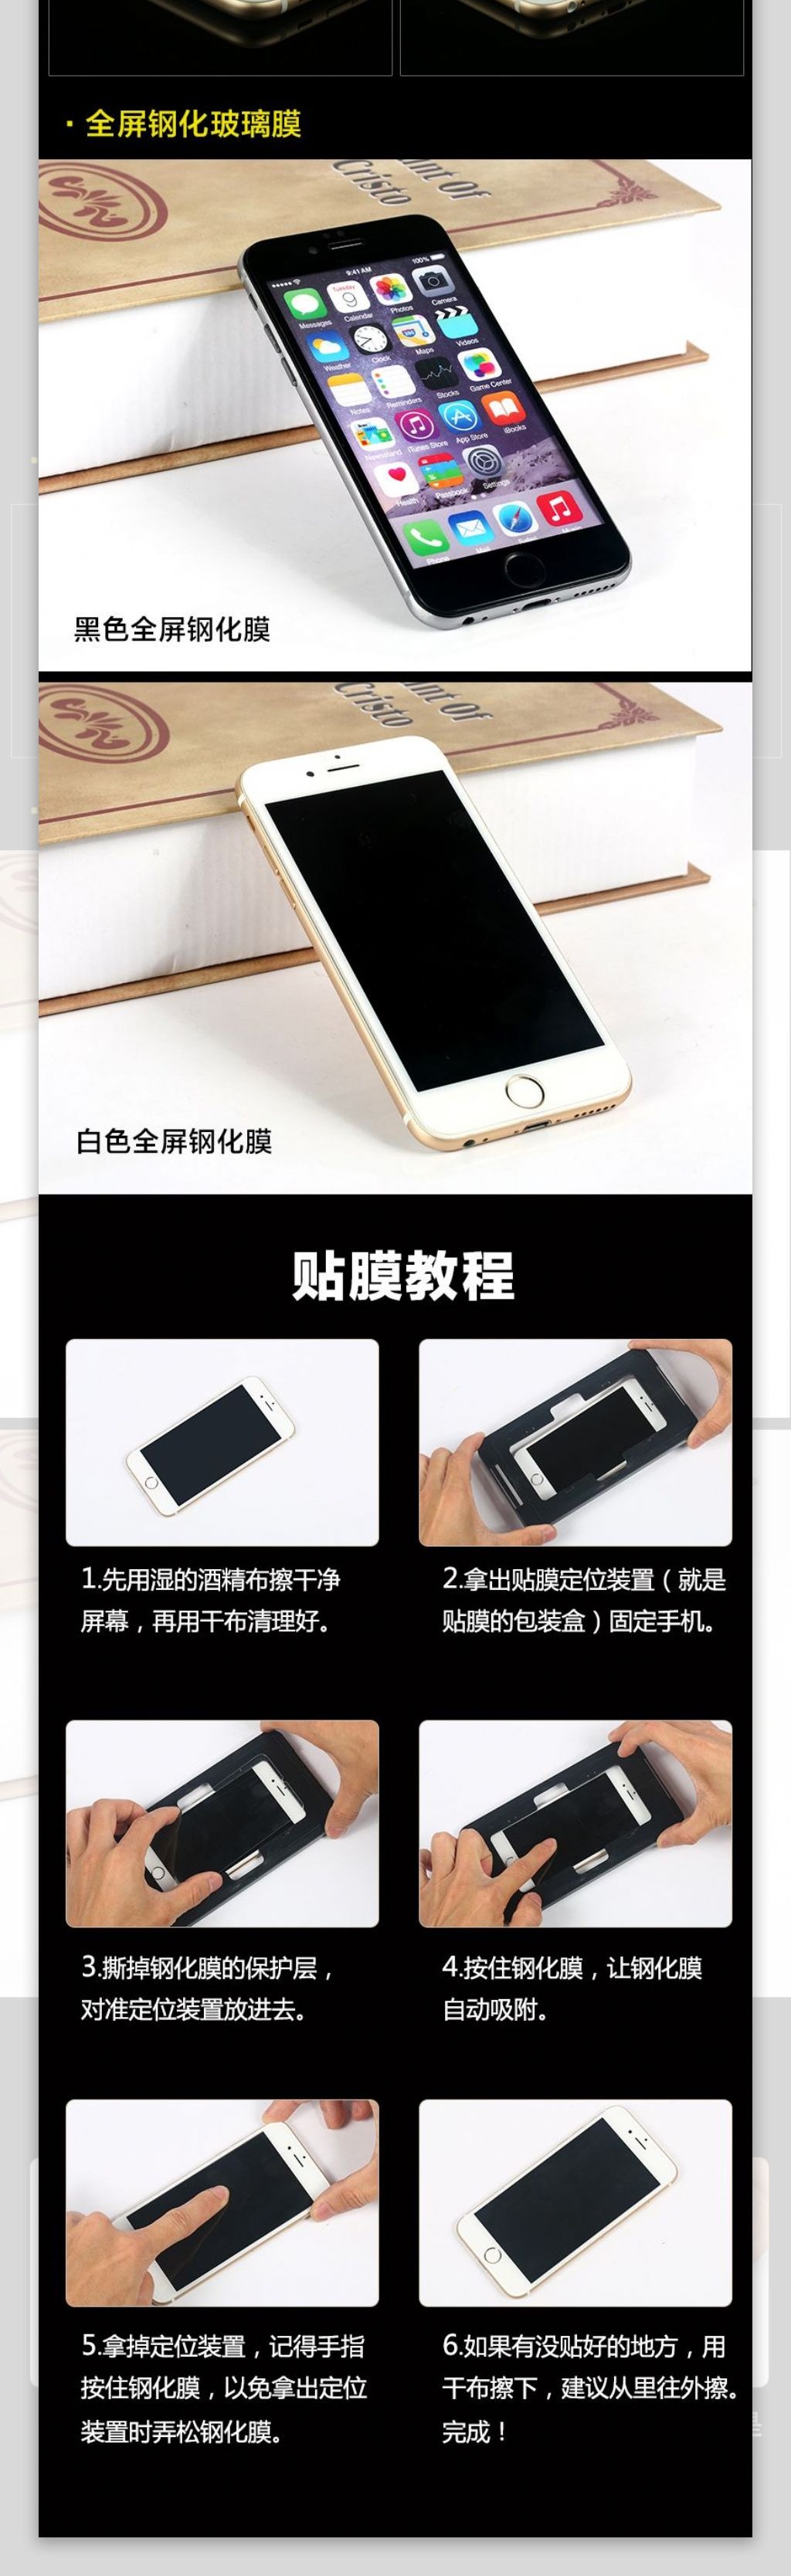 简约iPhone6钢化膜淘宝详情页